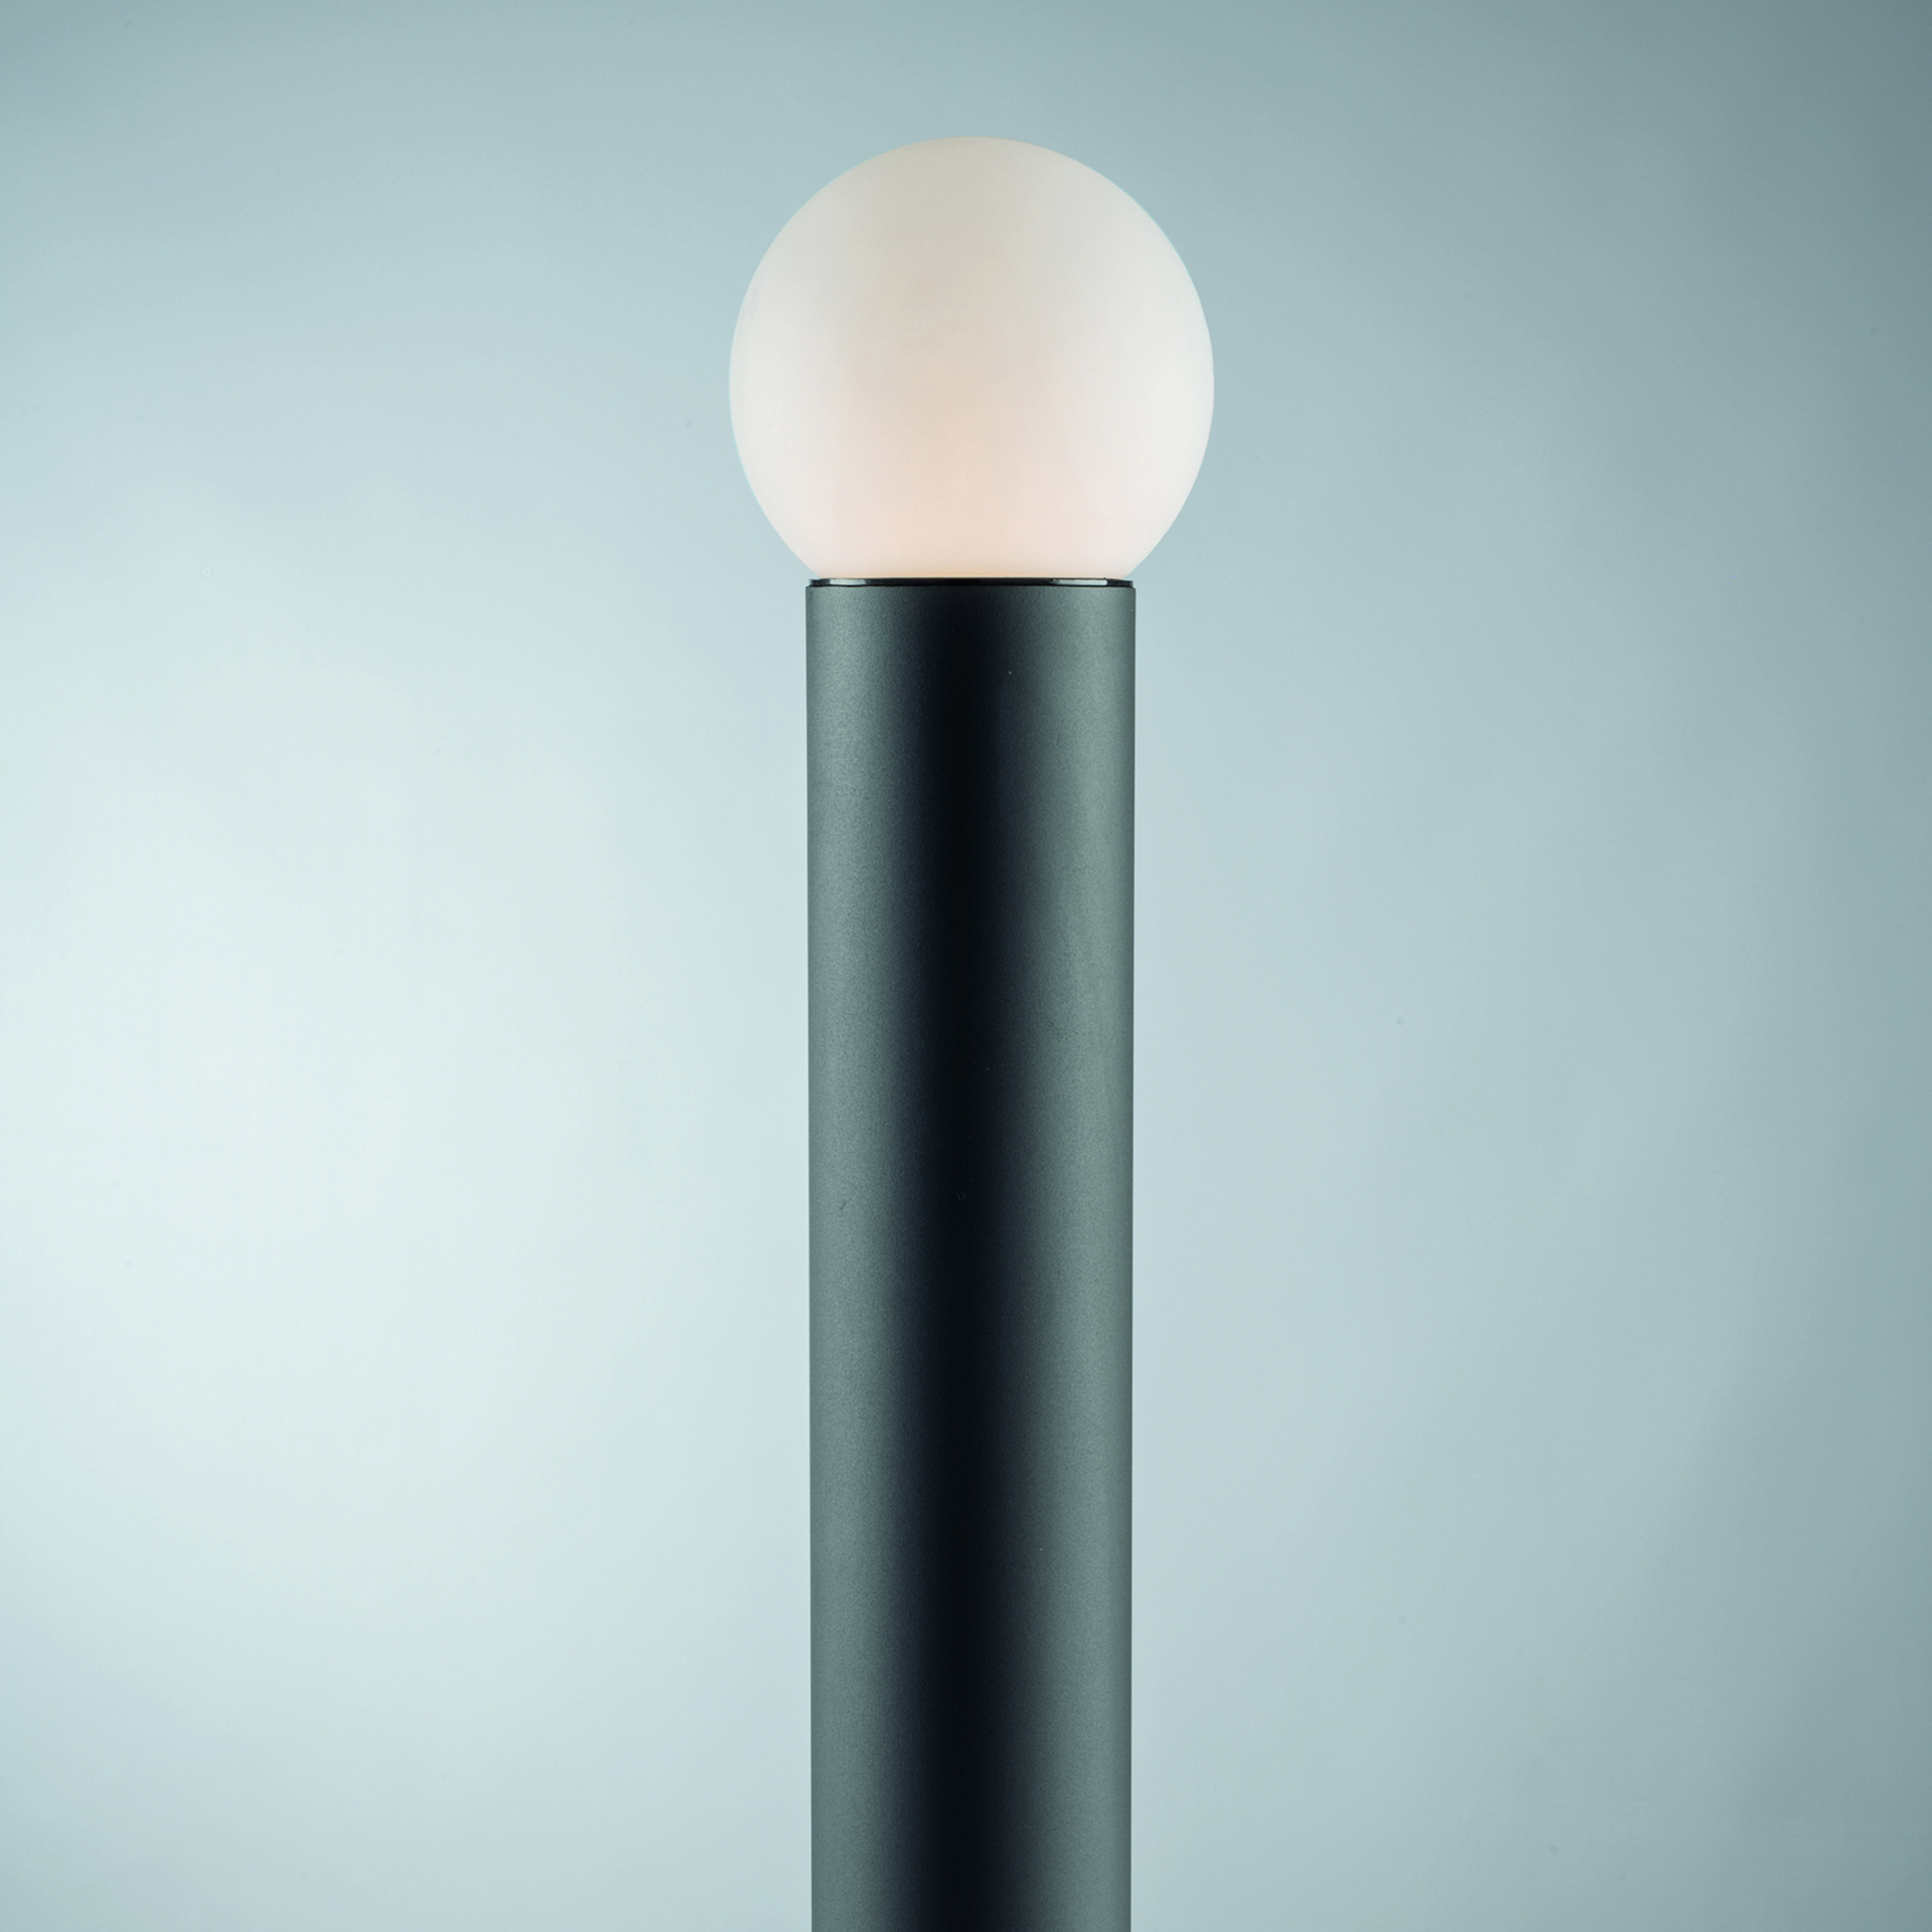 Skittle bolardo luminoso con pantalla esférica, altura 65 cm